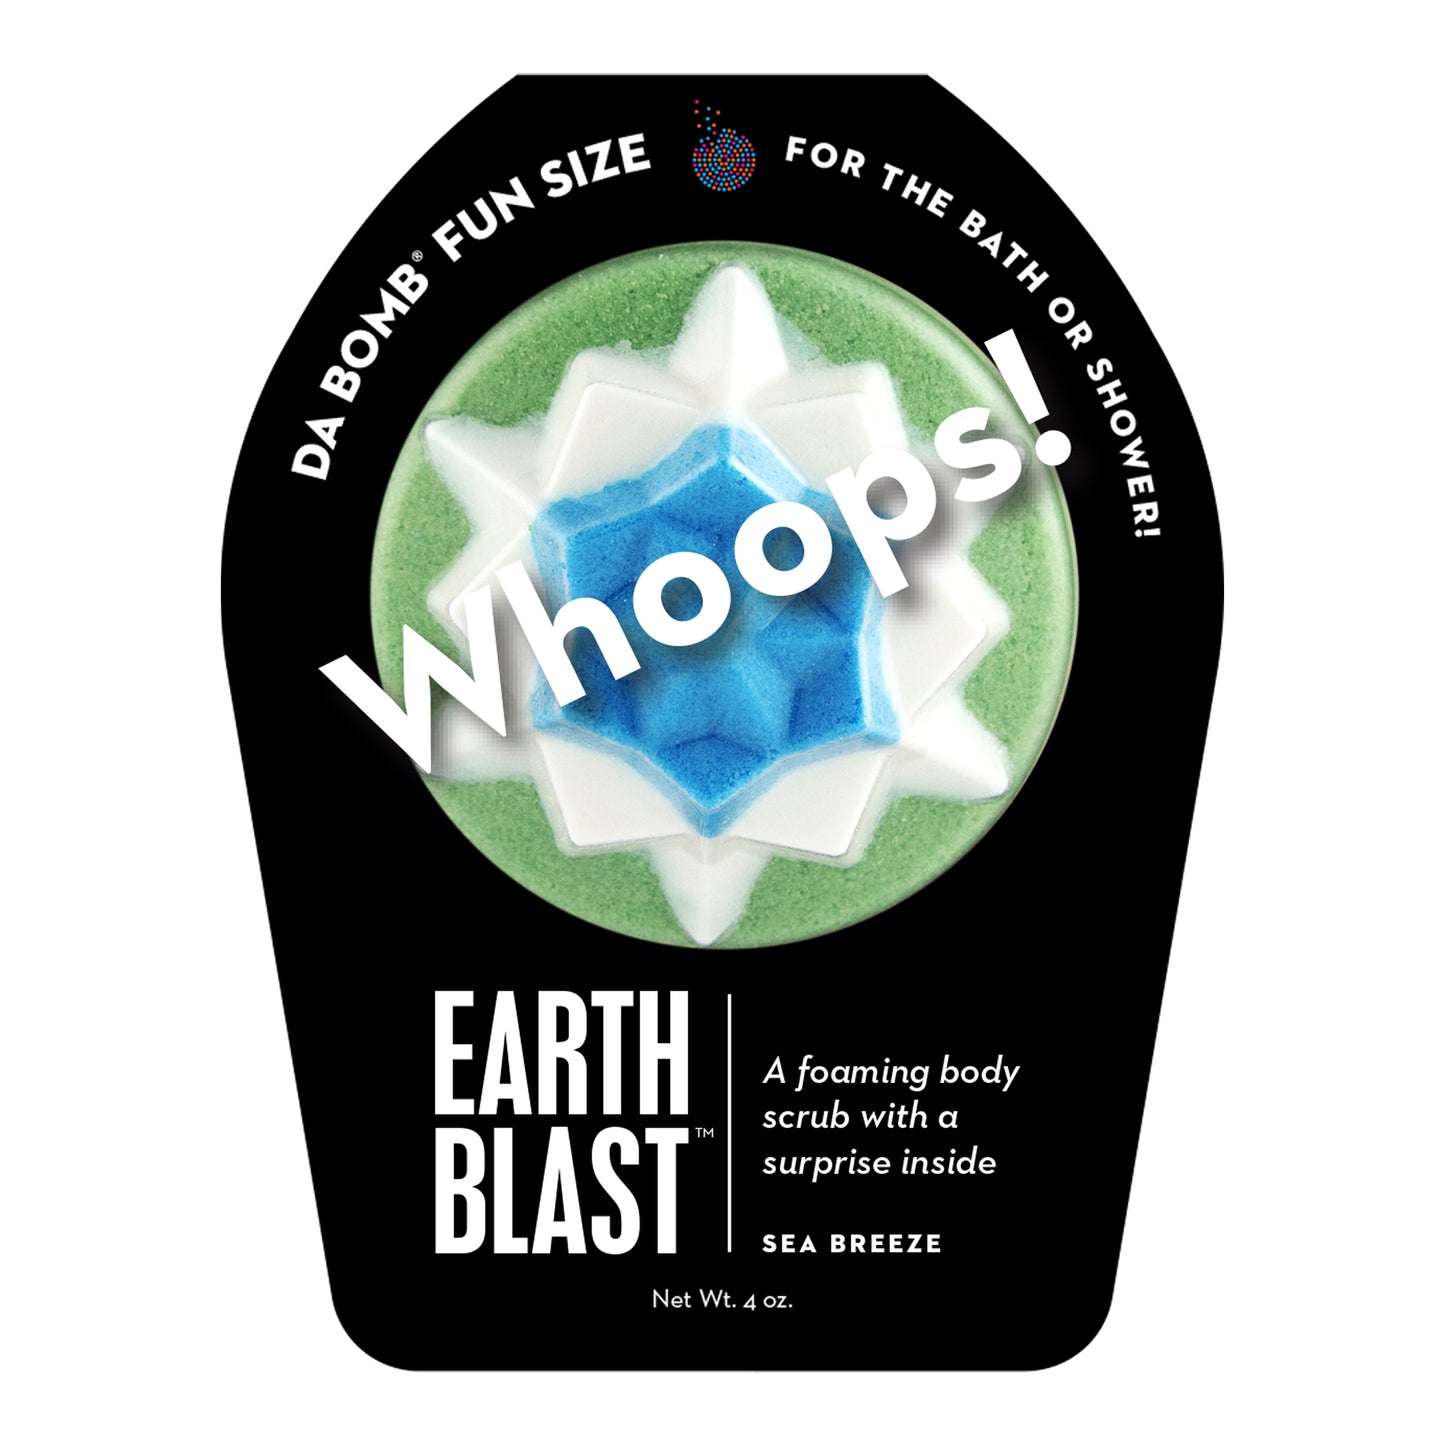 Whoops fun size earth blast!